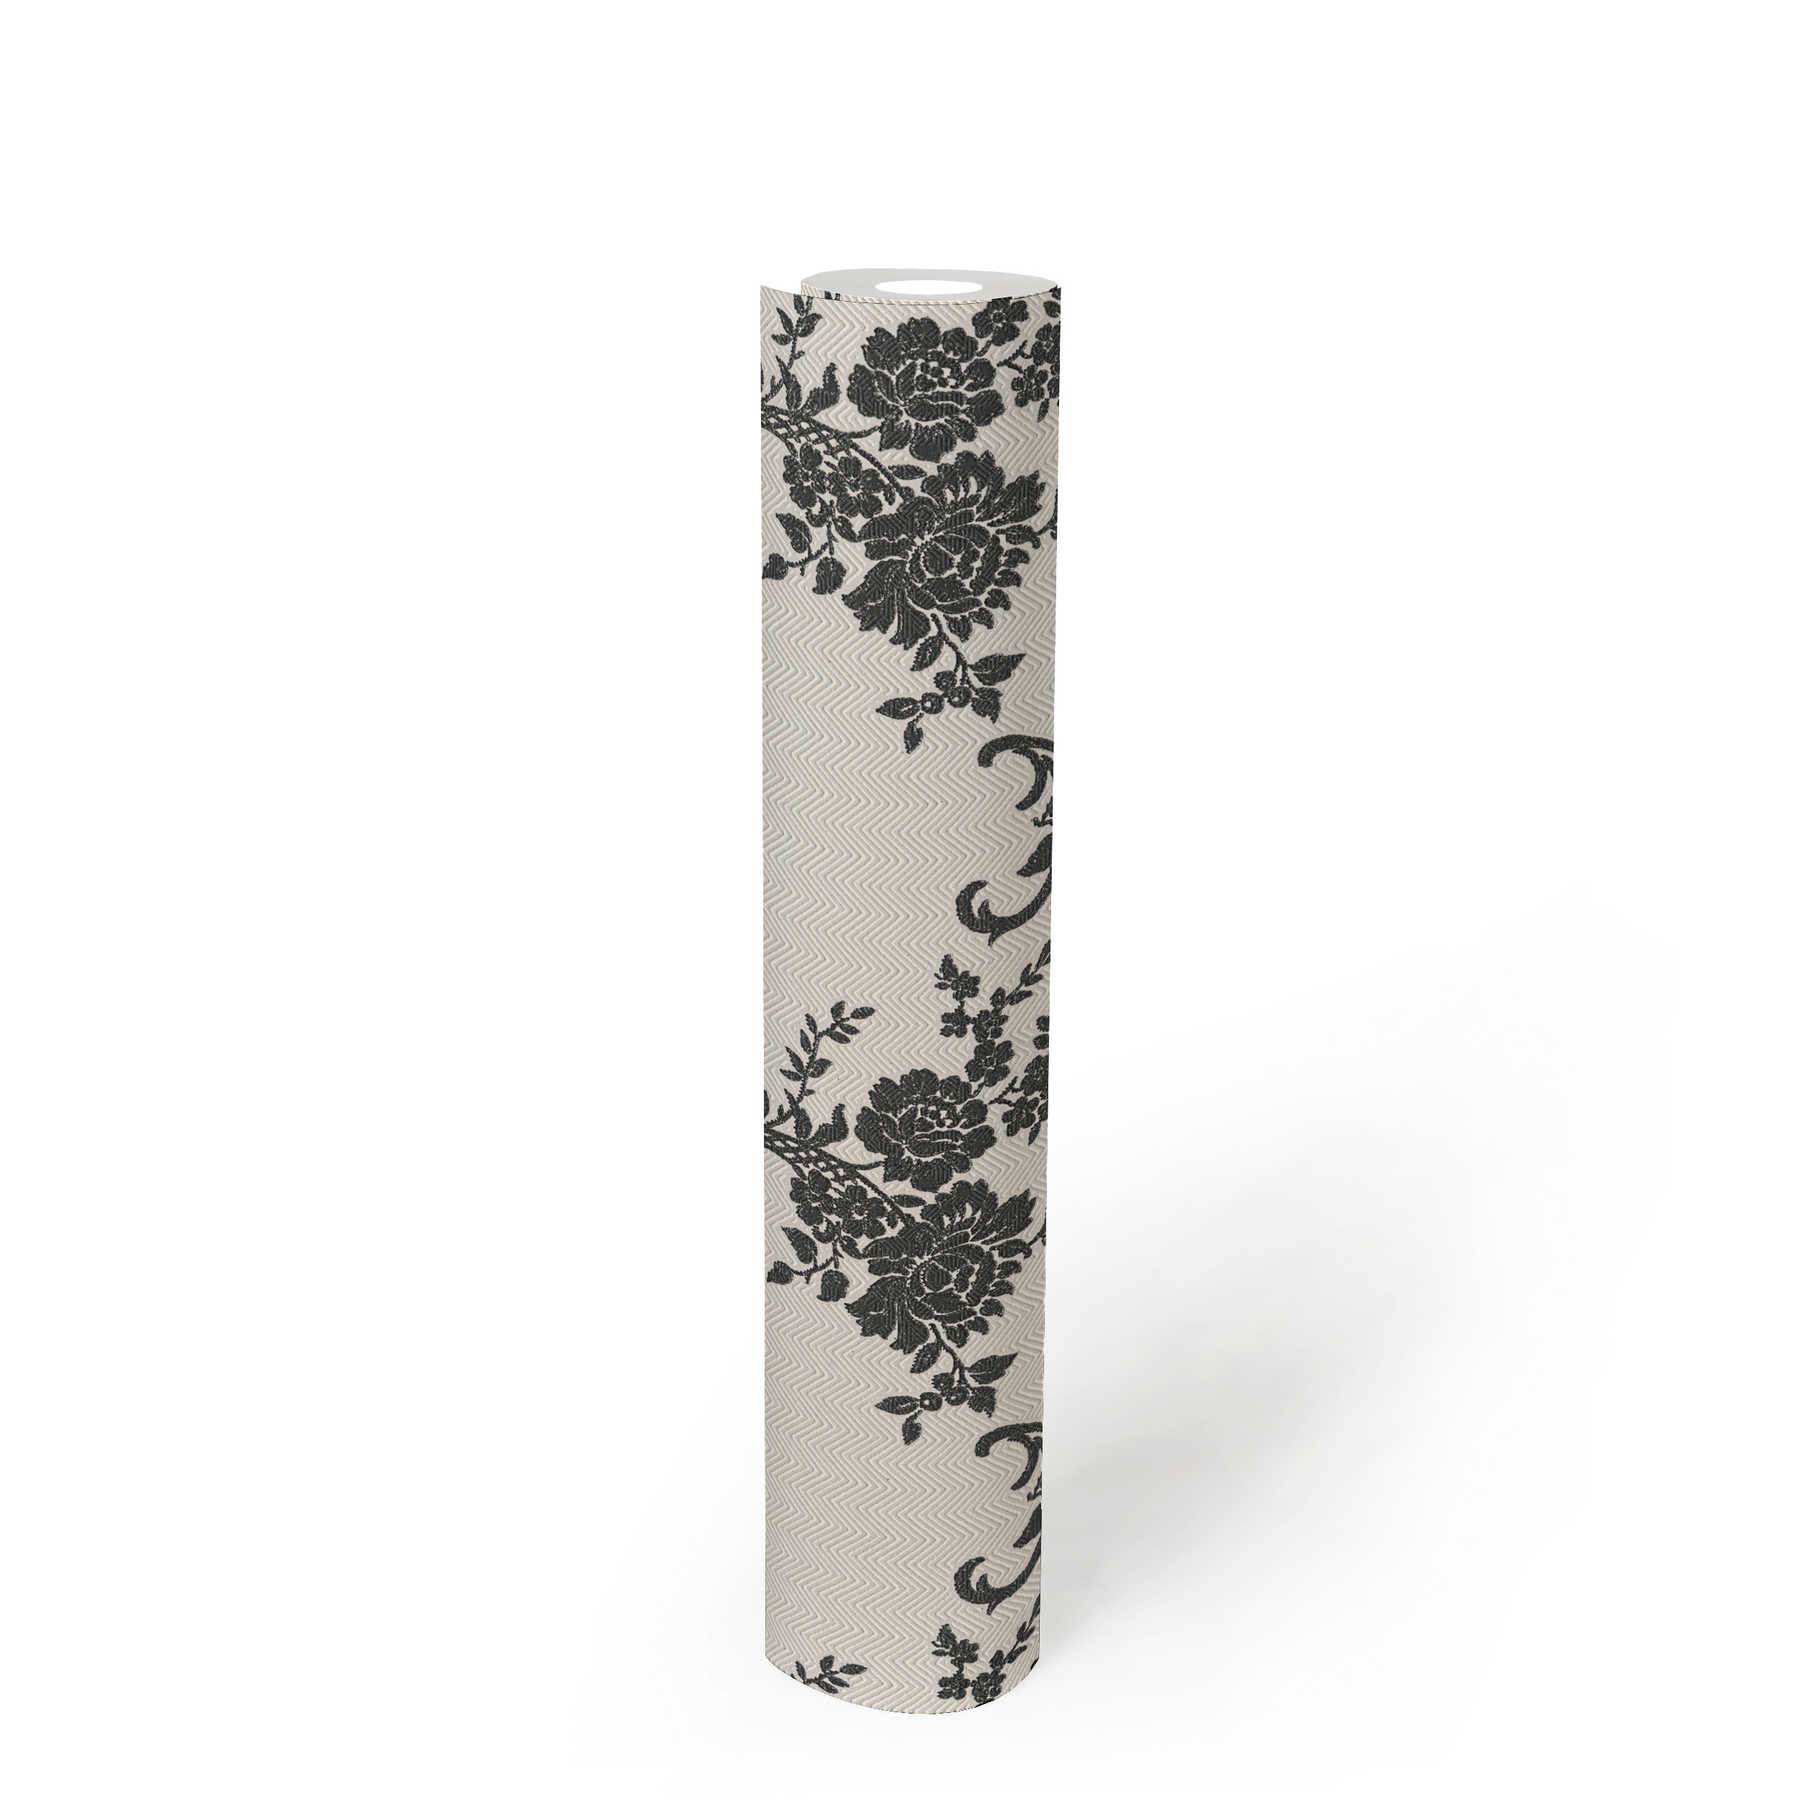             Papel pintado con adornos florales y diseño chevron - negro, blanco, plata
        